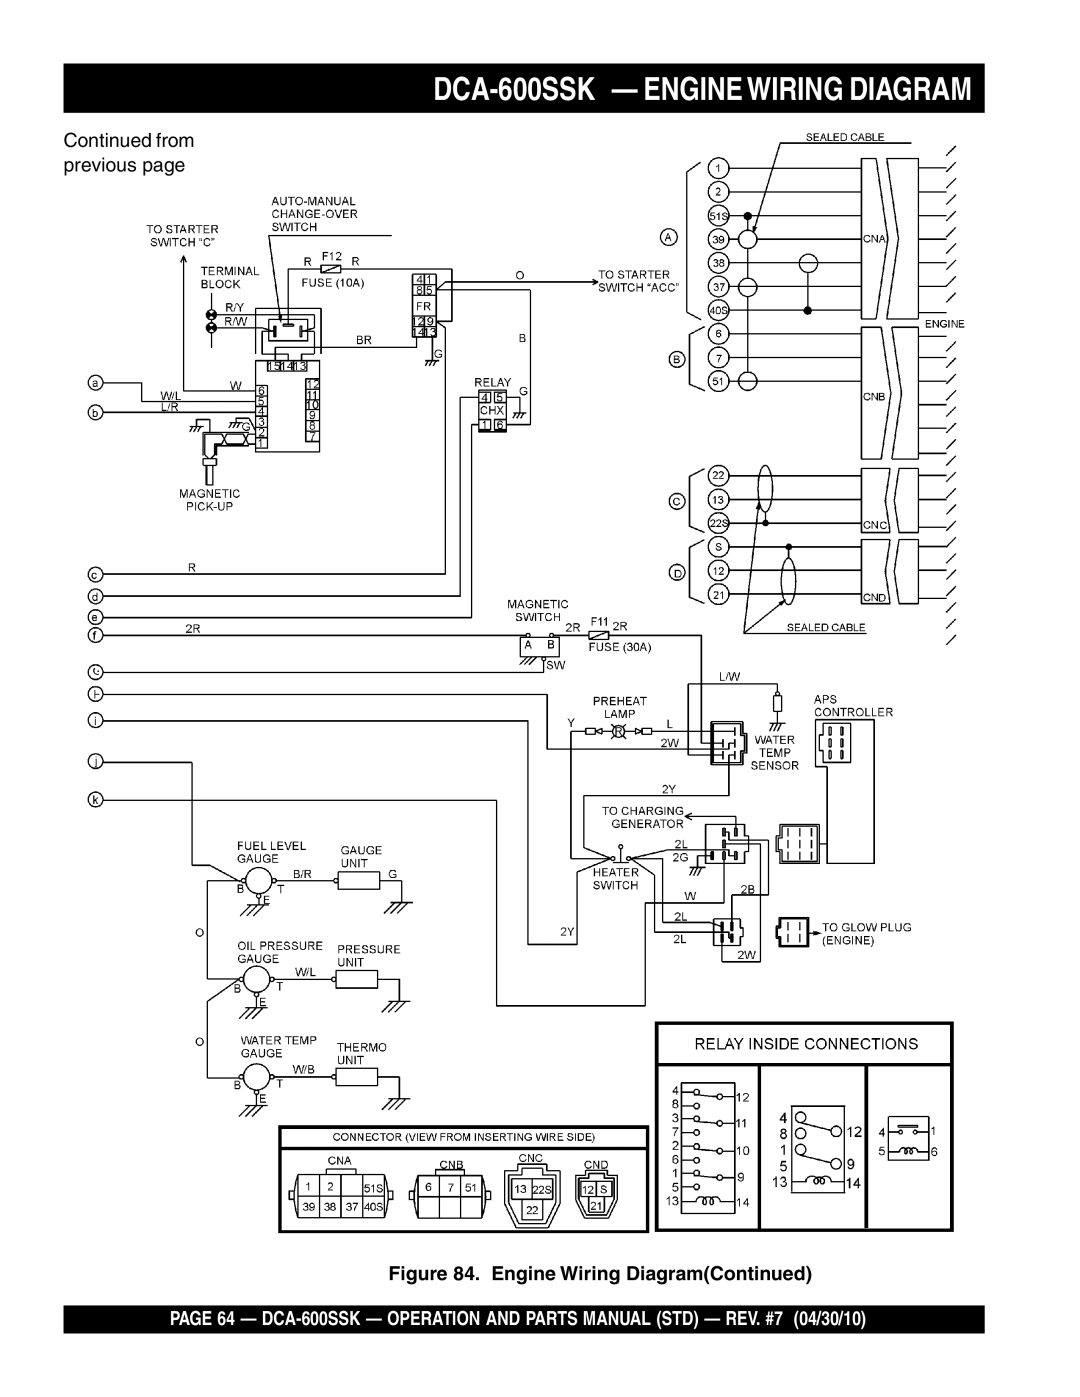 Multiquip operation manual DCA-600SSK - ENGINE WIRING DIAGRAM, Engine Wiring DiagramContinued 